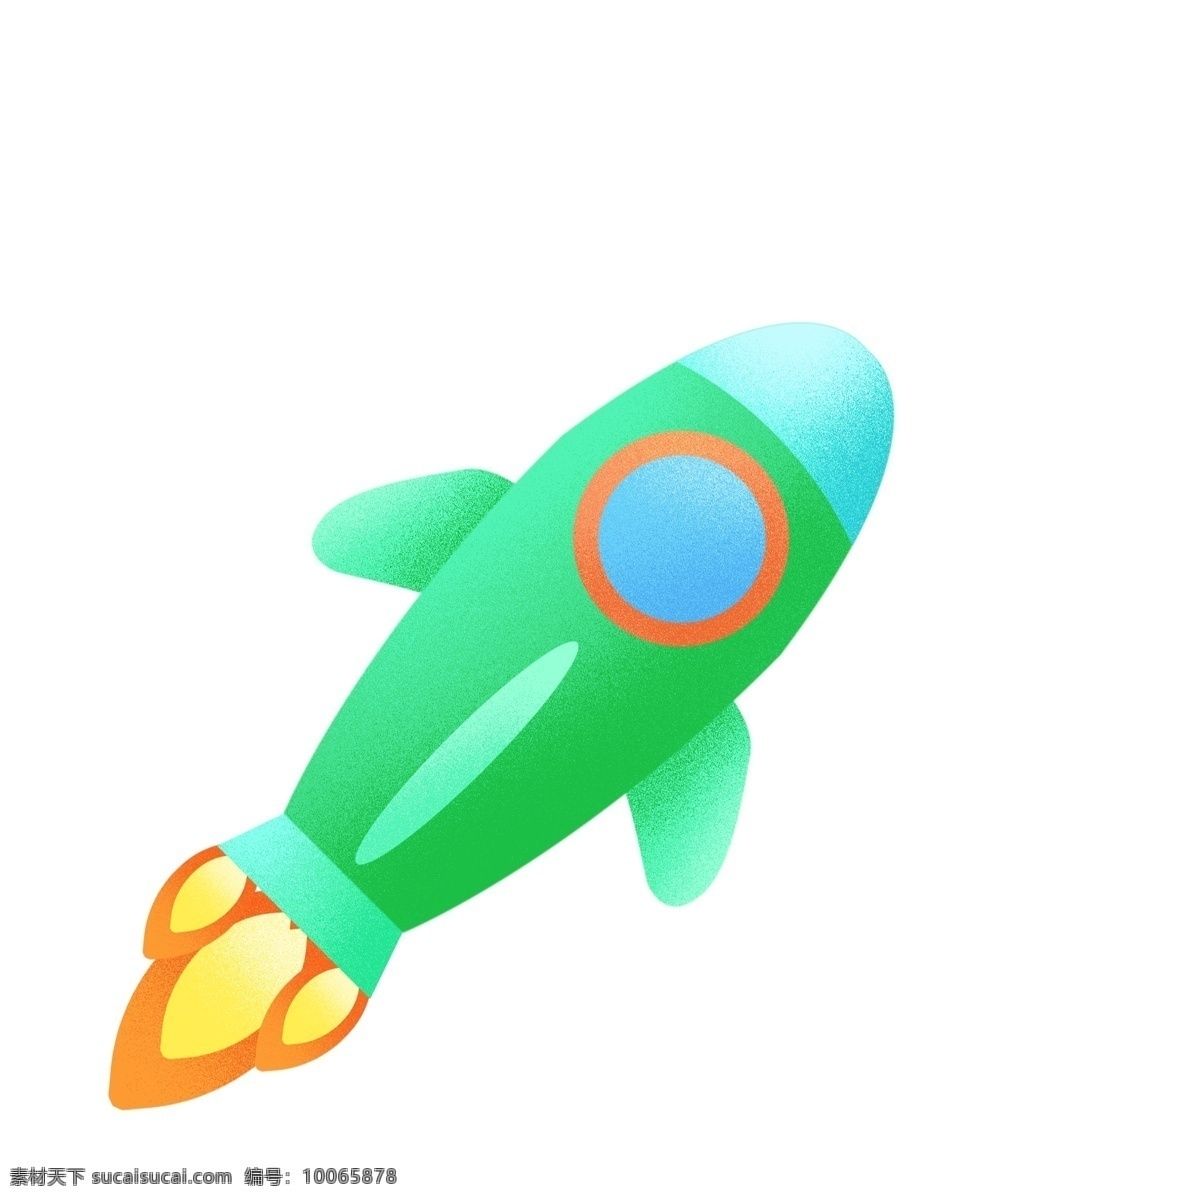 蓝色 火箭 图标 免 抠 宇宙 卡通火箭 蓝色火箭 火苗 窗子 火箭舱 原创手绘 卡通 可爱 简单 简洁 简约 飞天 航天科技 现代化